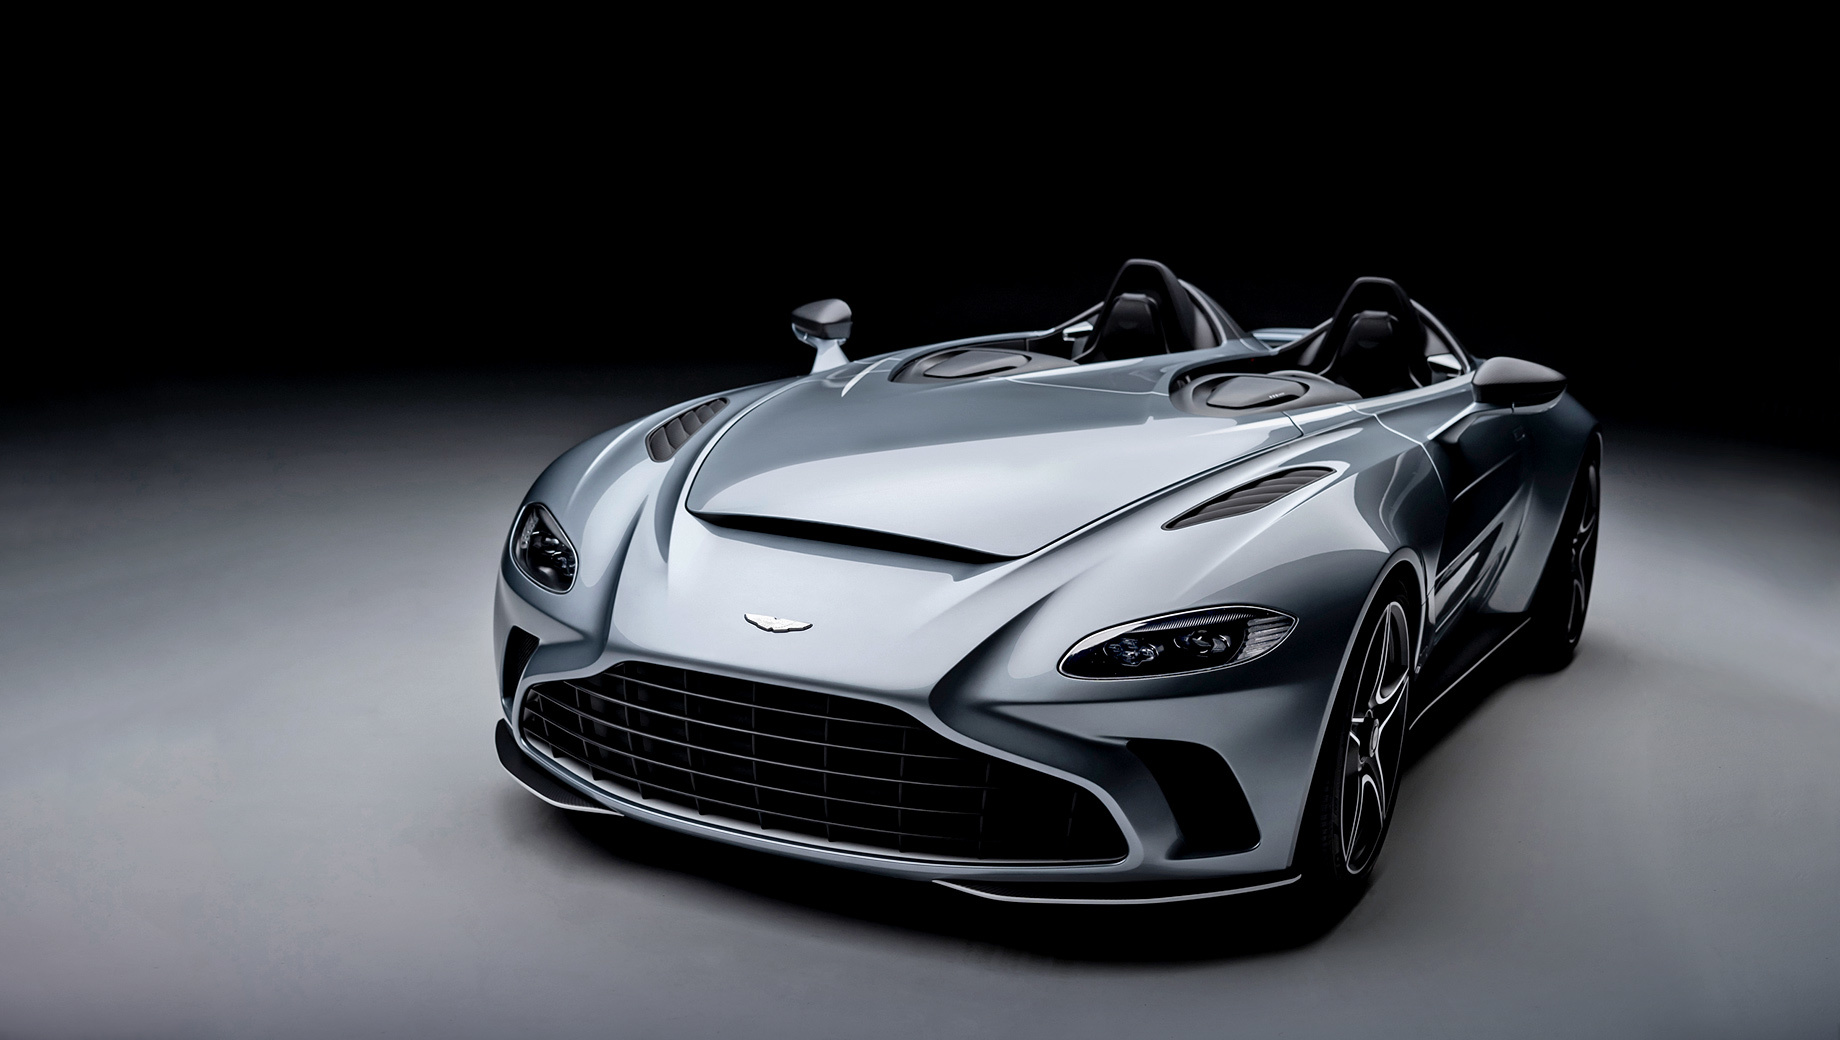 Aston martin v12 speedster. Для первого образца отделение Q by Aston Martin разработало особую ливрею F/A-18, с окраской Skyfall Silver, копирующей оттенок известного истребителя.